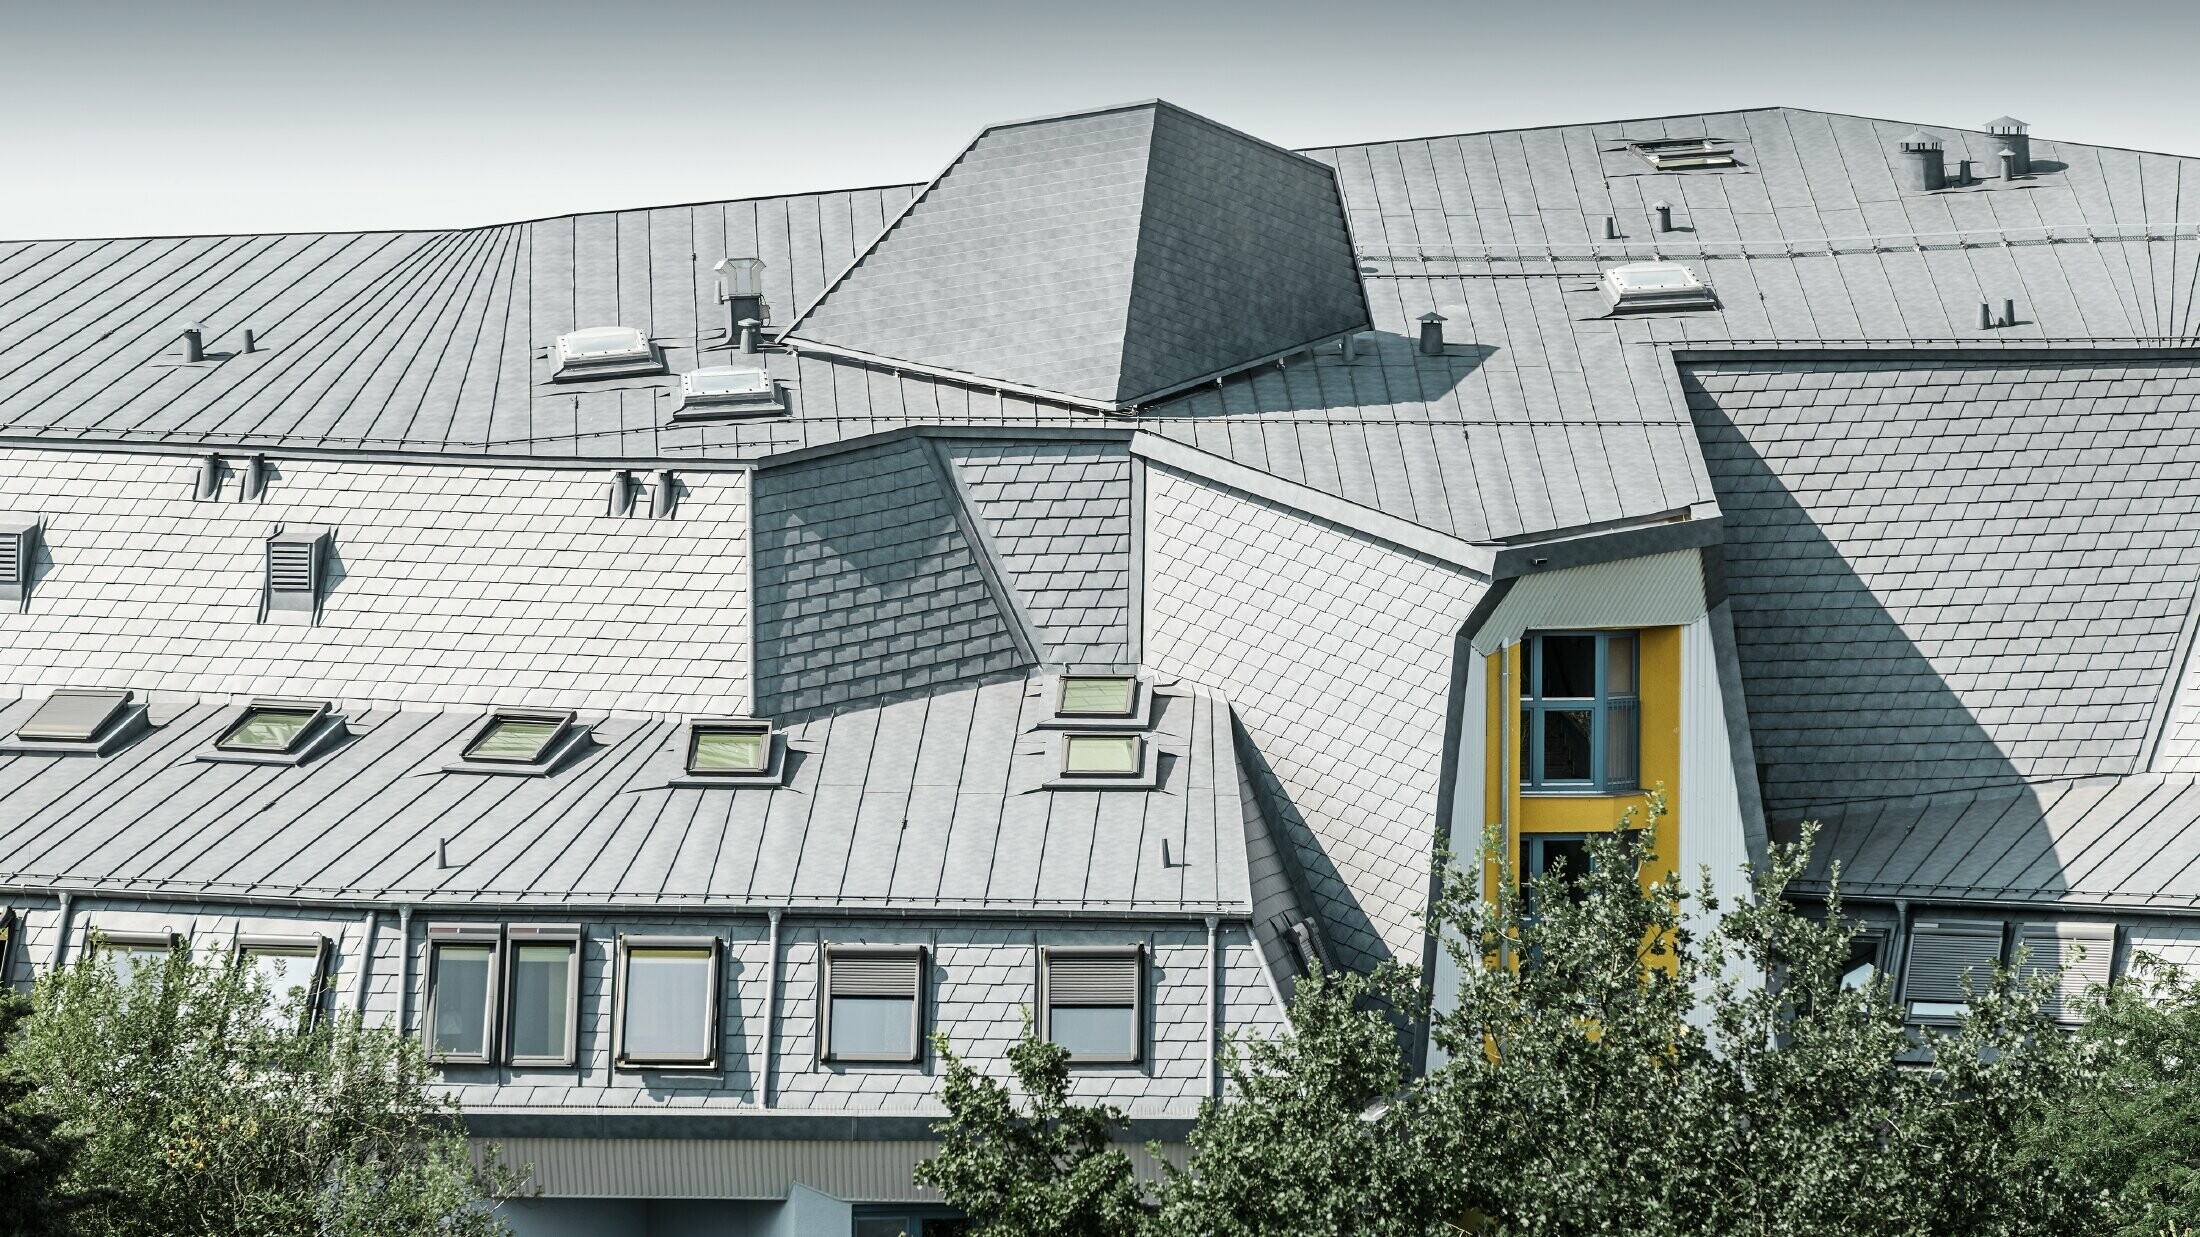 Členitá střecha s vikýři a klikatými rohy pečovatelského domu pokrytá falcovaným šindelem a svitkovým plechem PREFALZ v barvě P.10 břidlicové